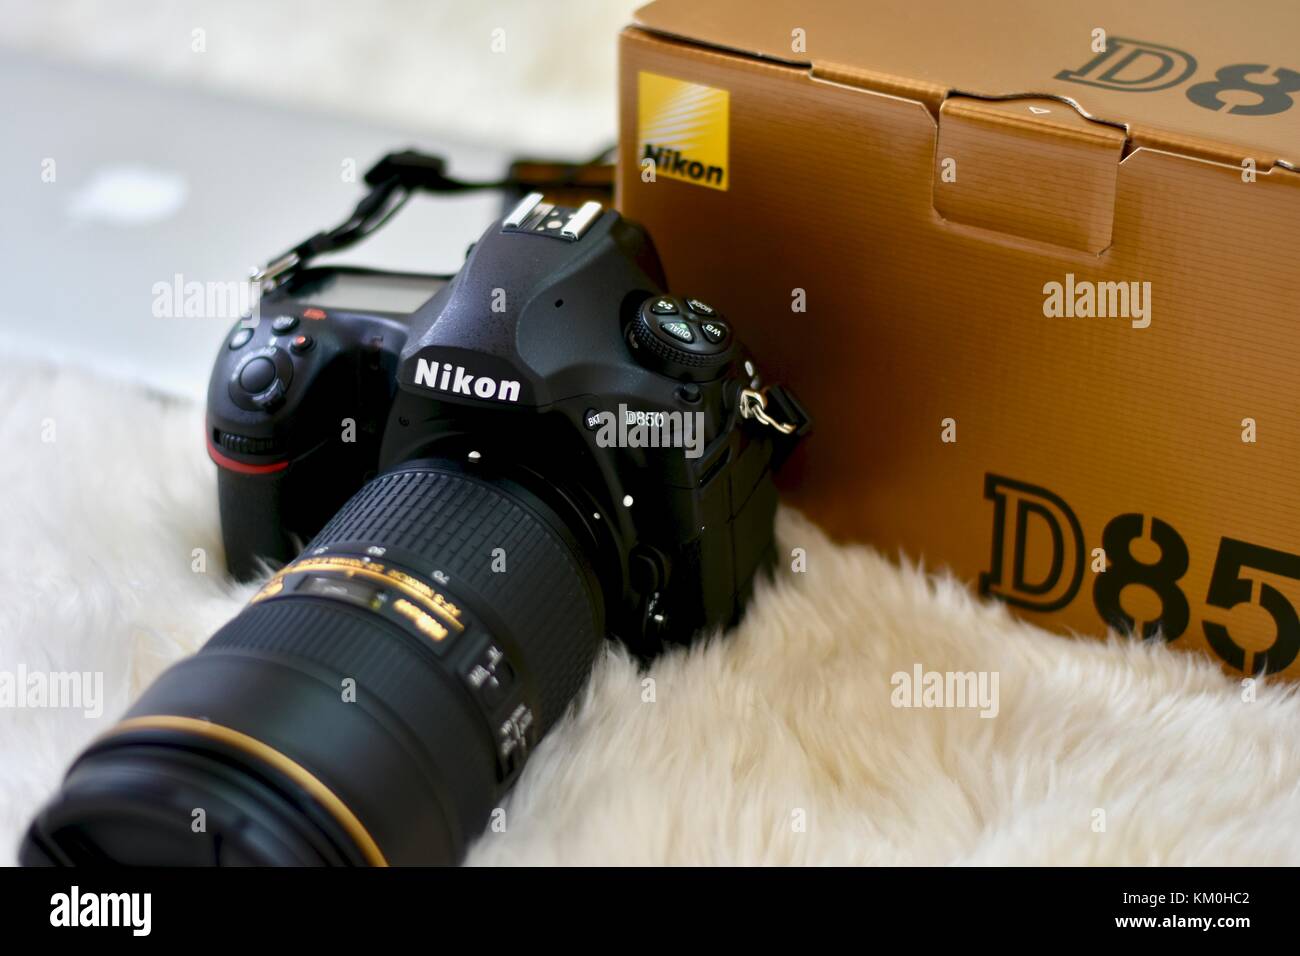 NIKON D850 DSLR Camera 24-120 mm VR Lens Price in India - Buy